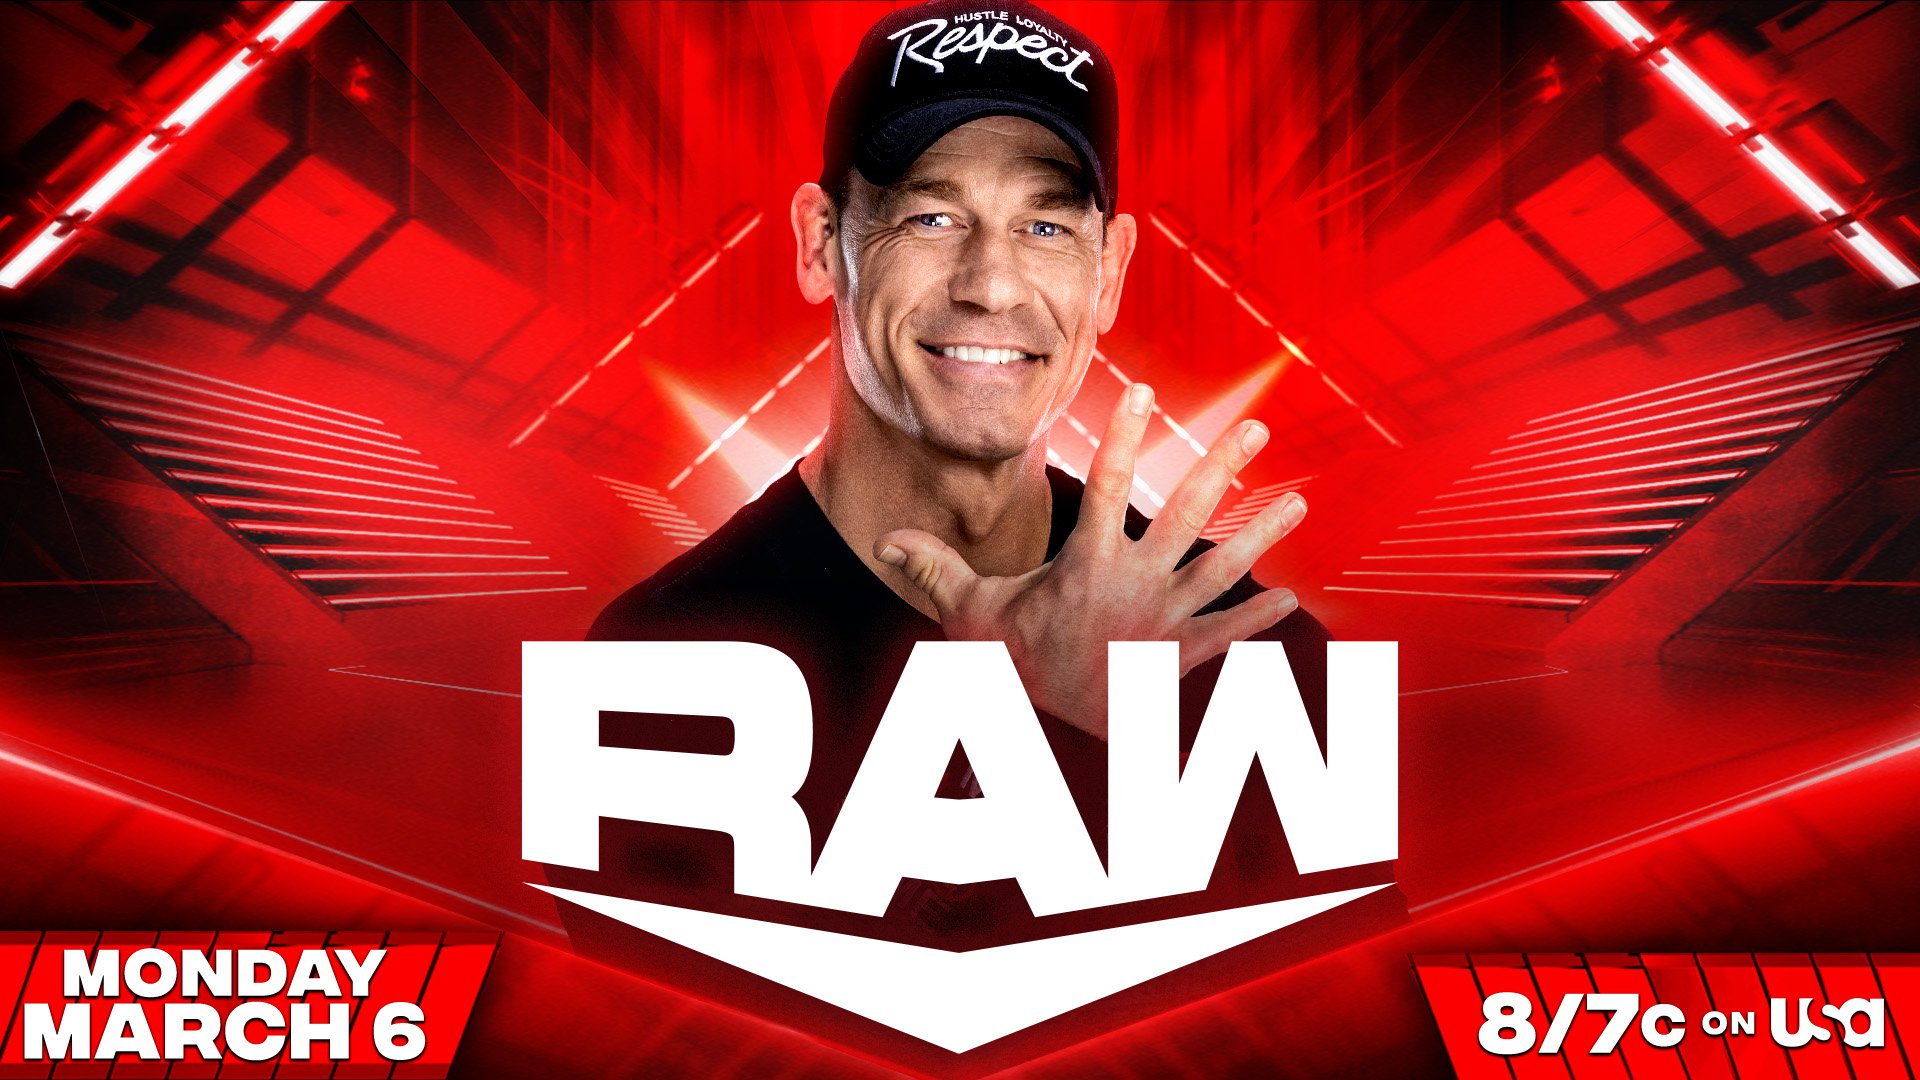 Vendas de ingresso aumentam após anúncio de John Cena no WWE Raw